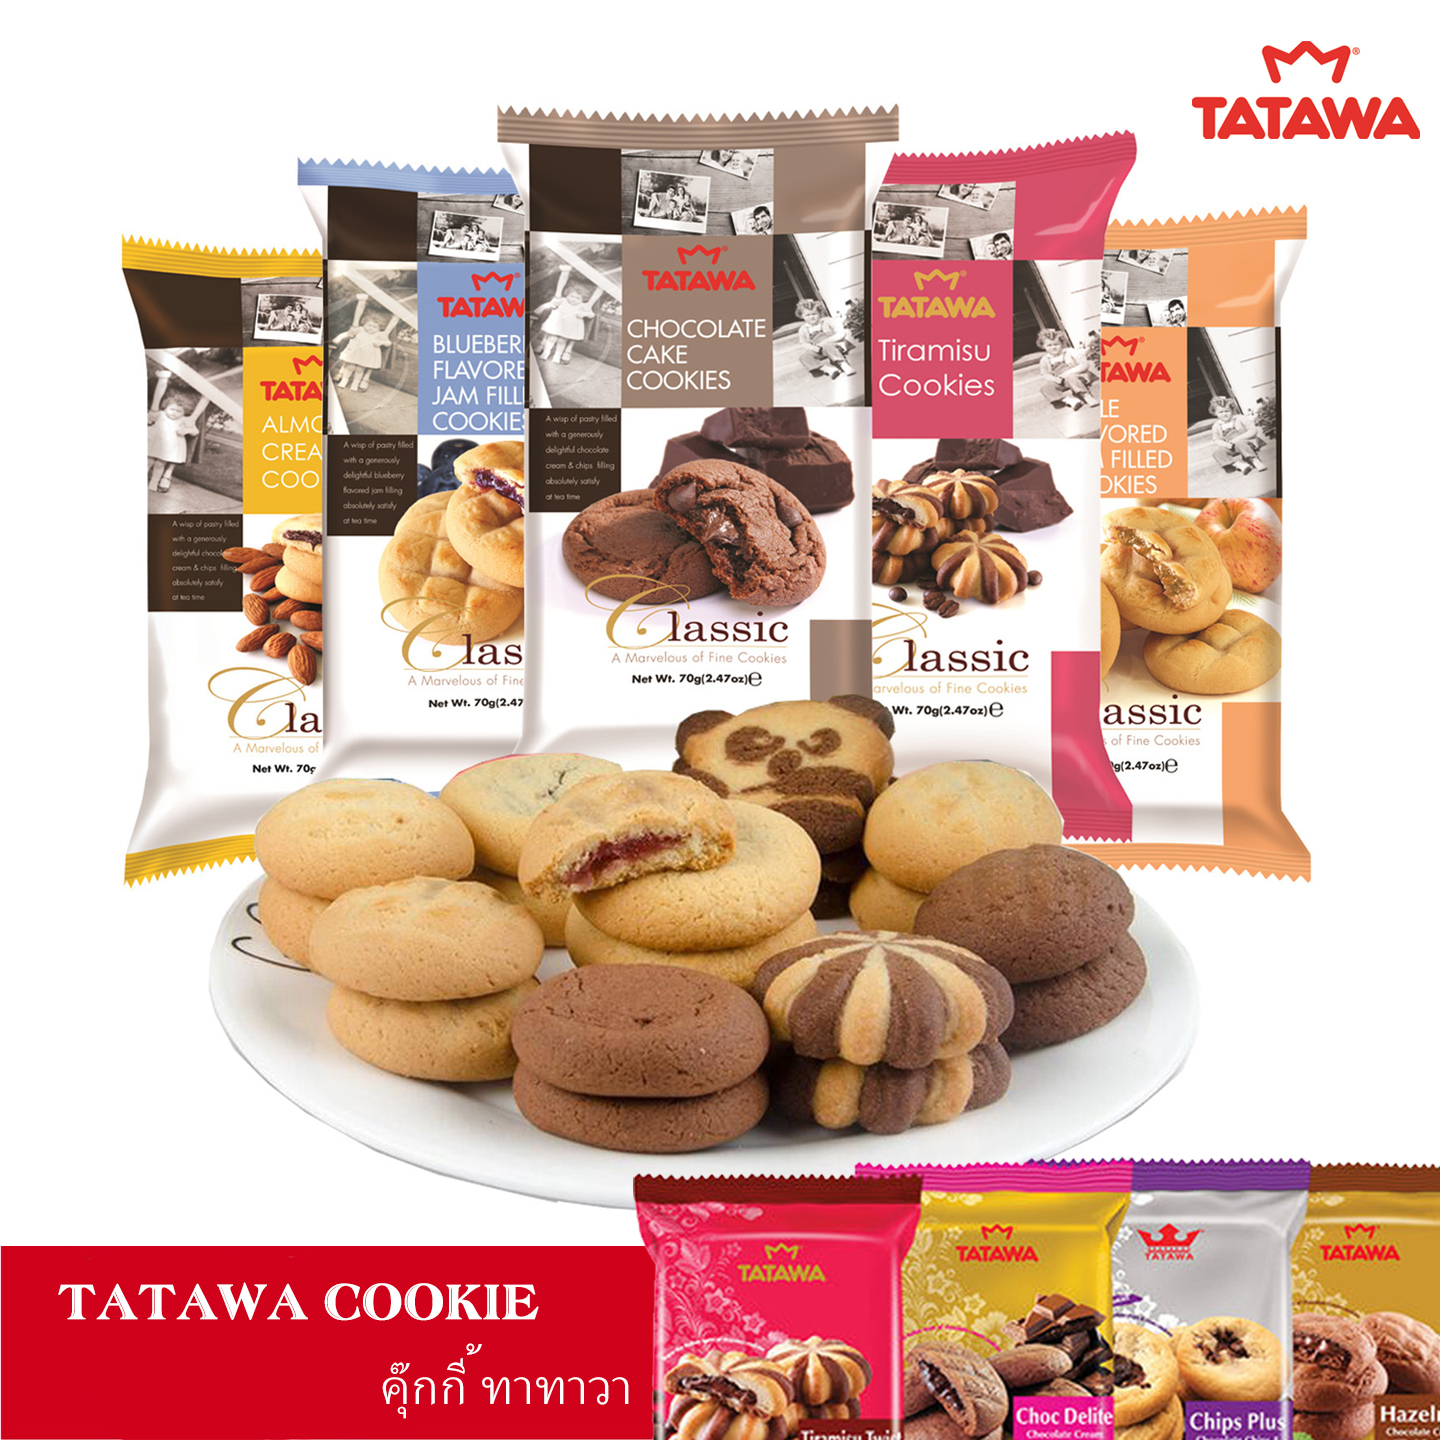 (เลือกรสชาติ) คุกกี้ TATAWA คุกกี้นิ่มสอดไส้หลายรส หอม อร่อย บรรจุ 10 ชิ้น ขนาด 120 กรัม 10 รสชาติ